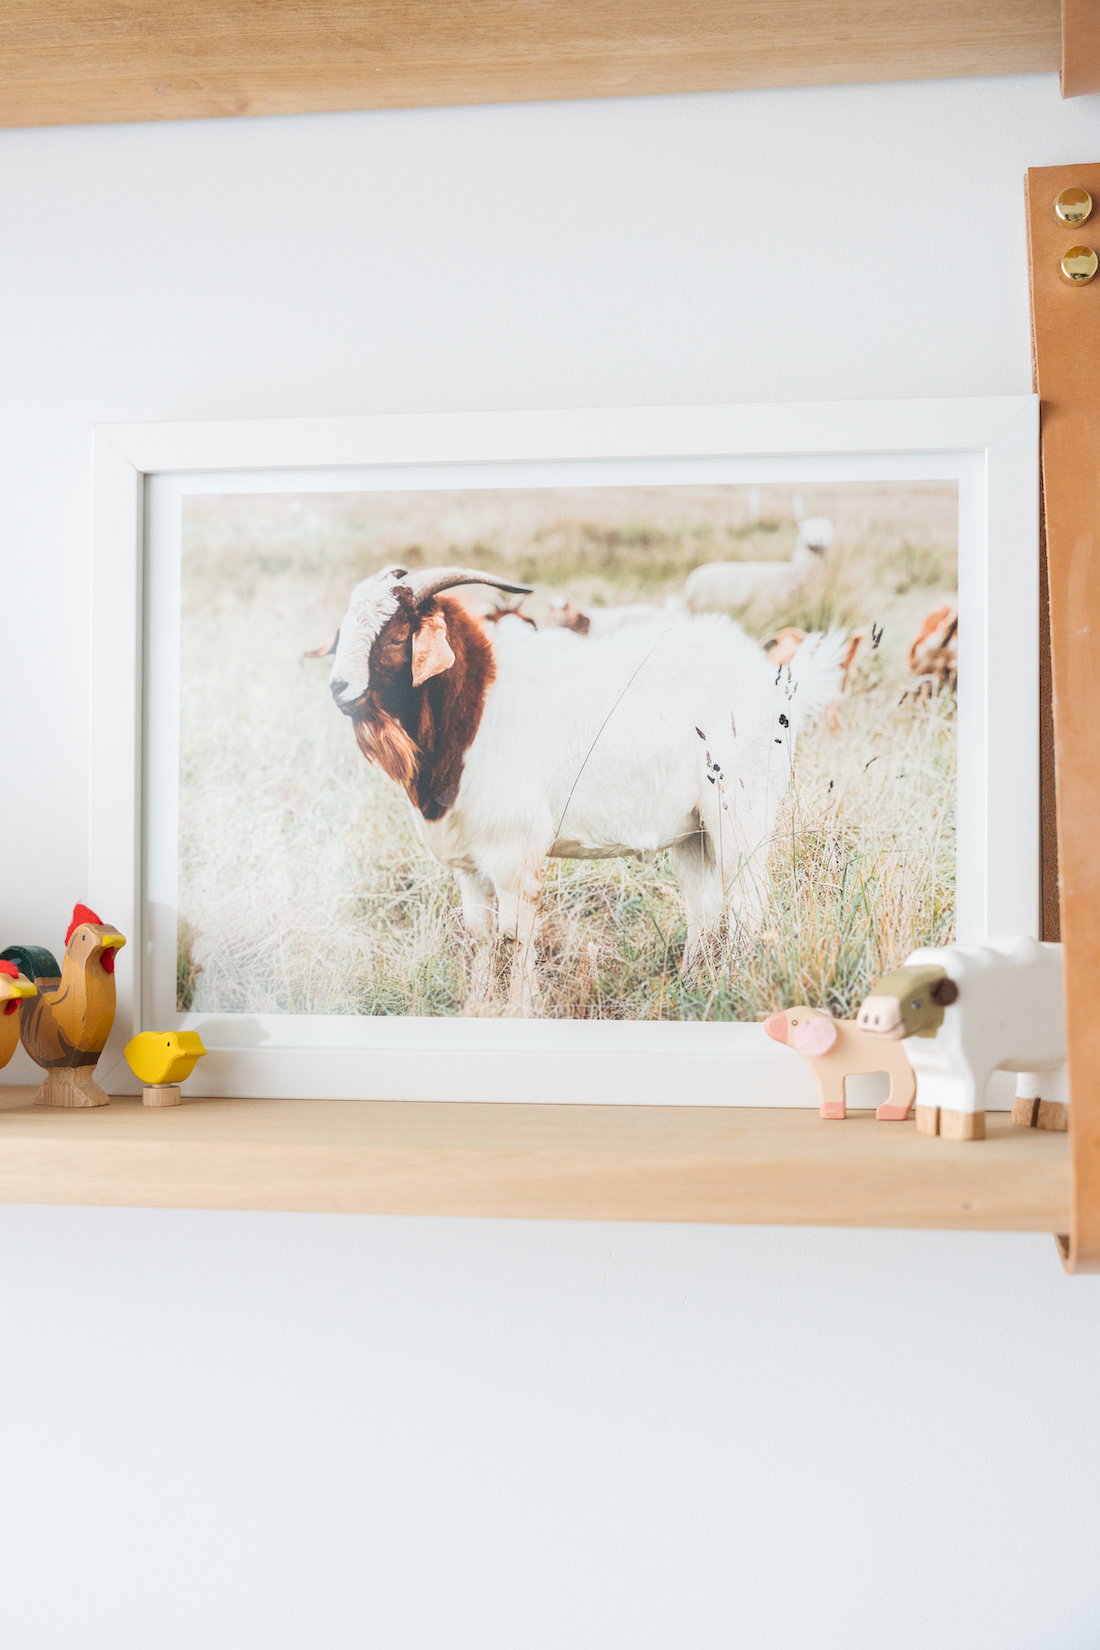 Goat artwork on shelf